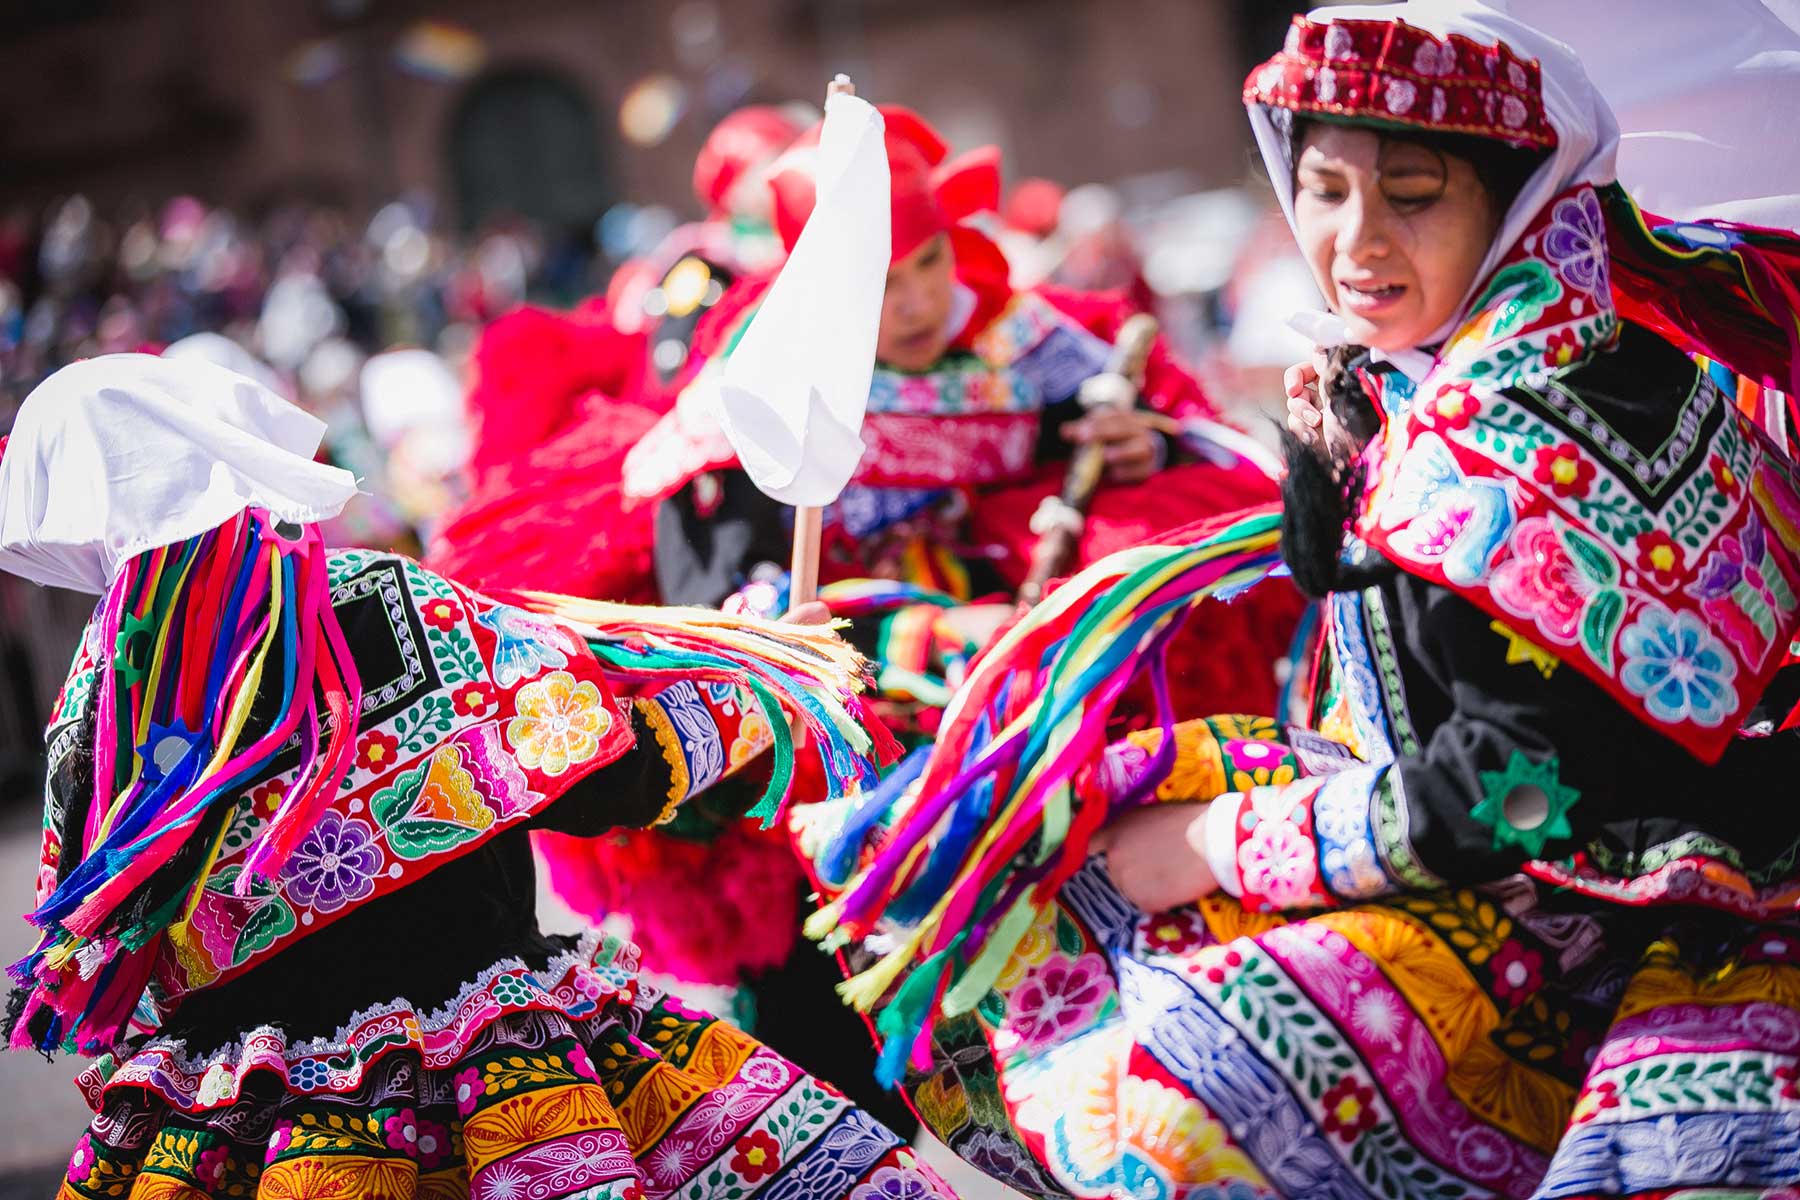 Los bailarines lucen trajes multicolores y derrochan buen ritmo durante las coreografías preparadas para homenajear al Cusco